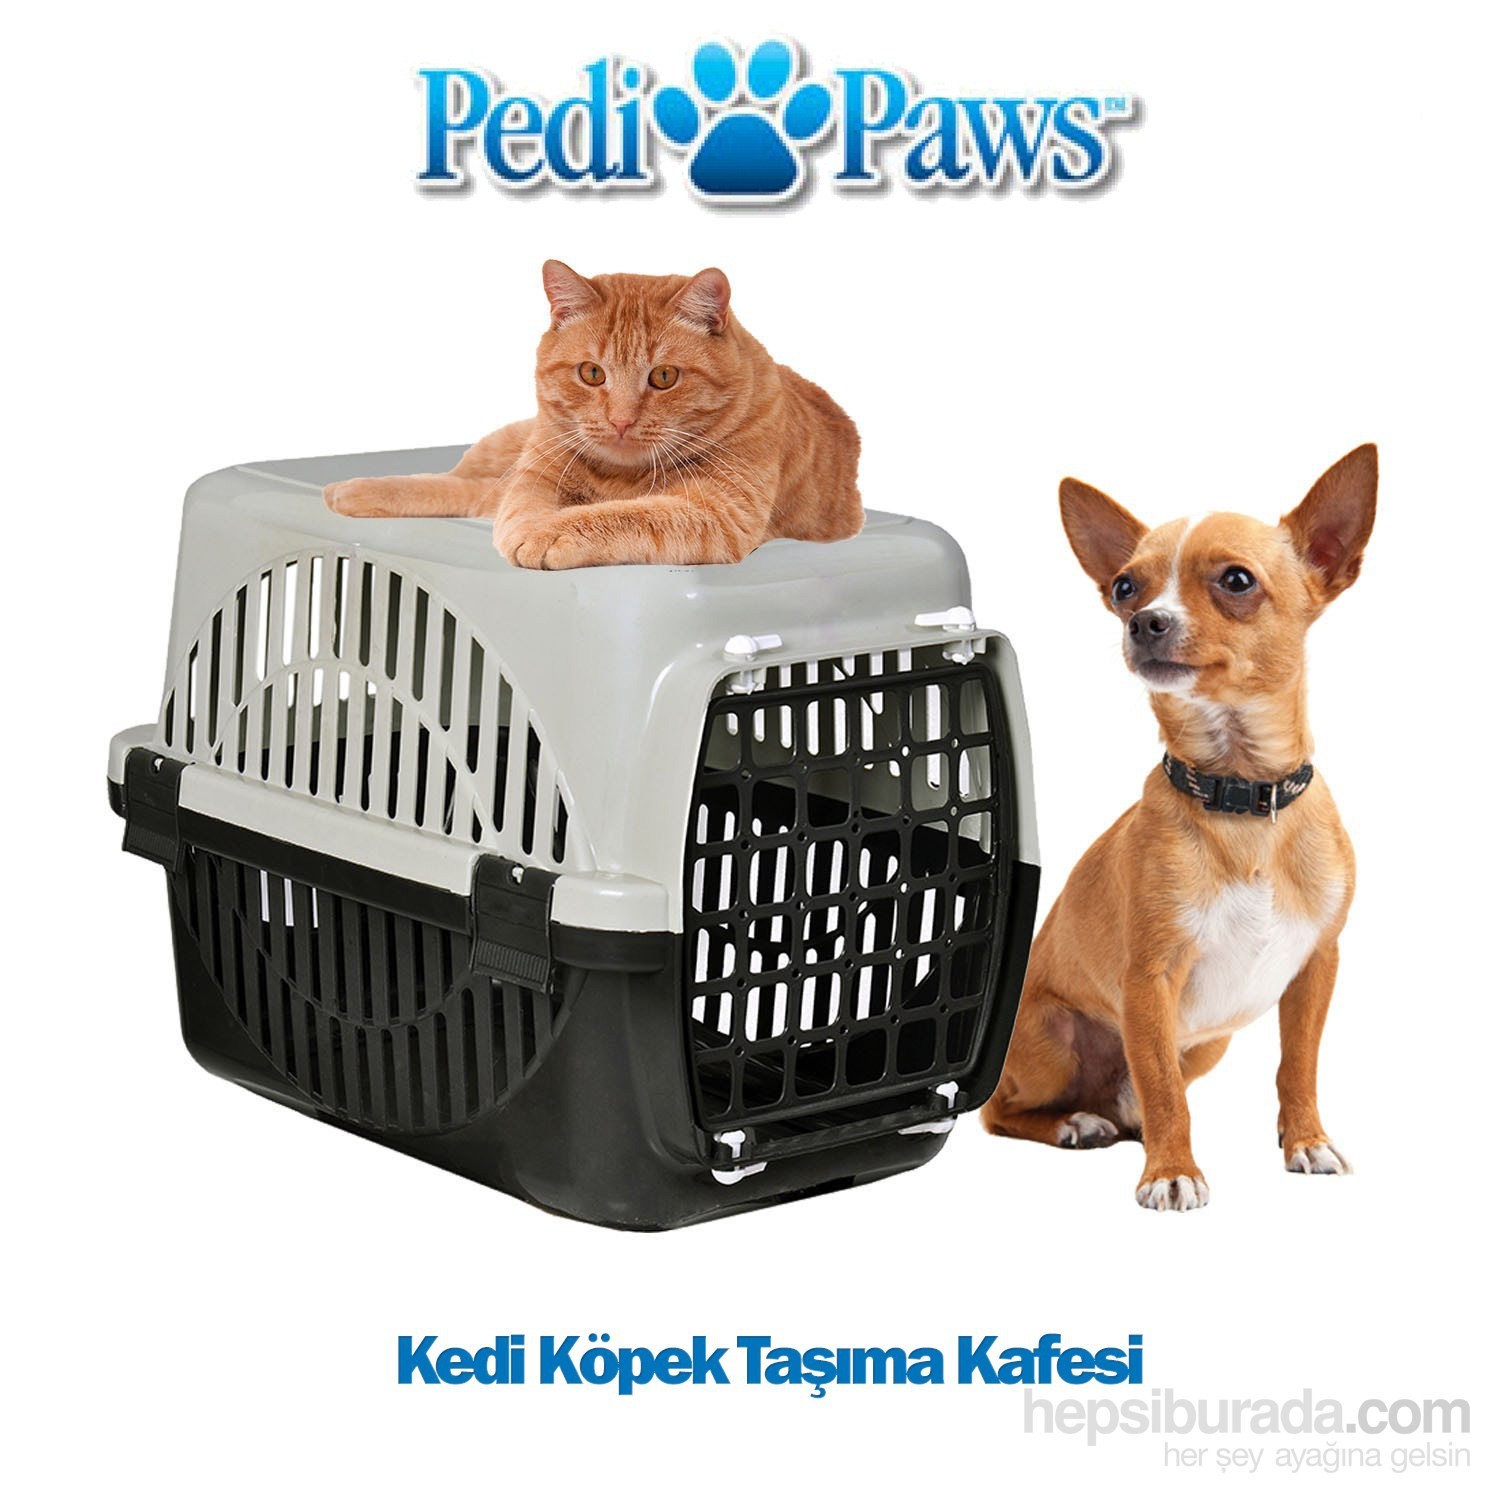 Pedipaws Kedi Köpek Taşıma Kafesi Trip Fiyatı